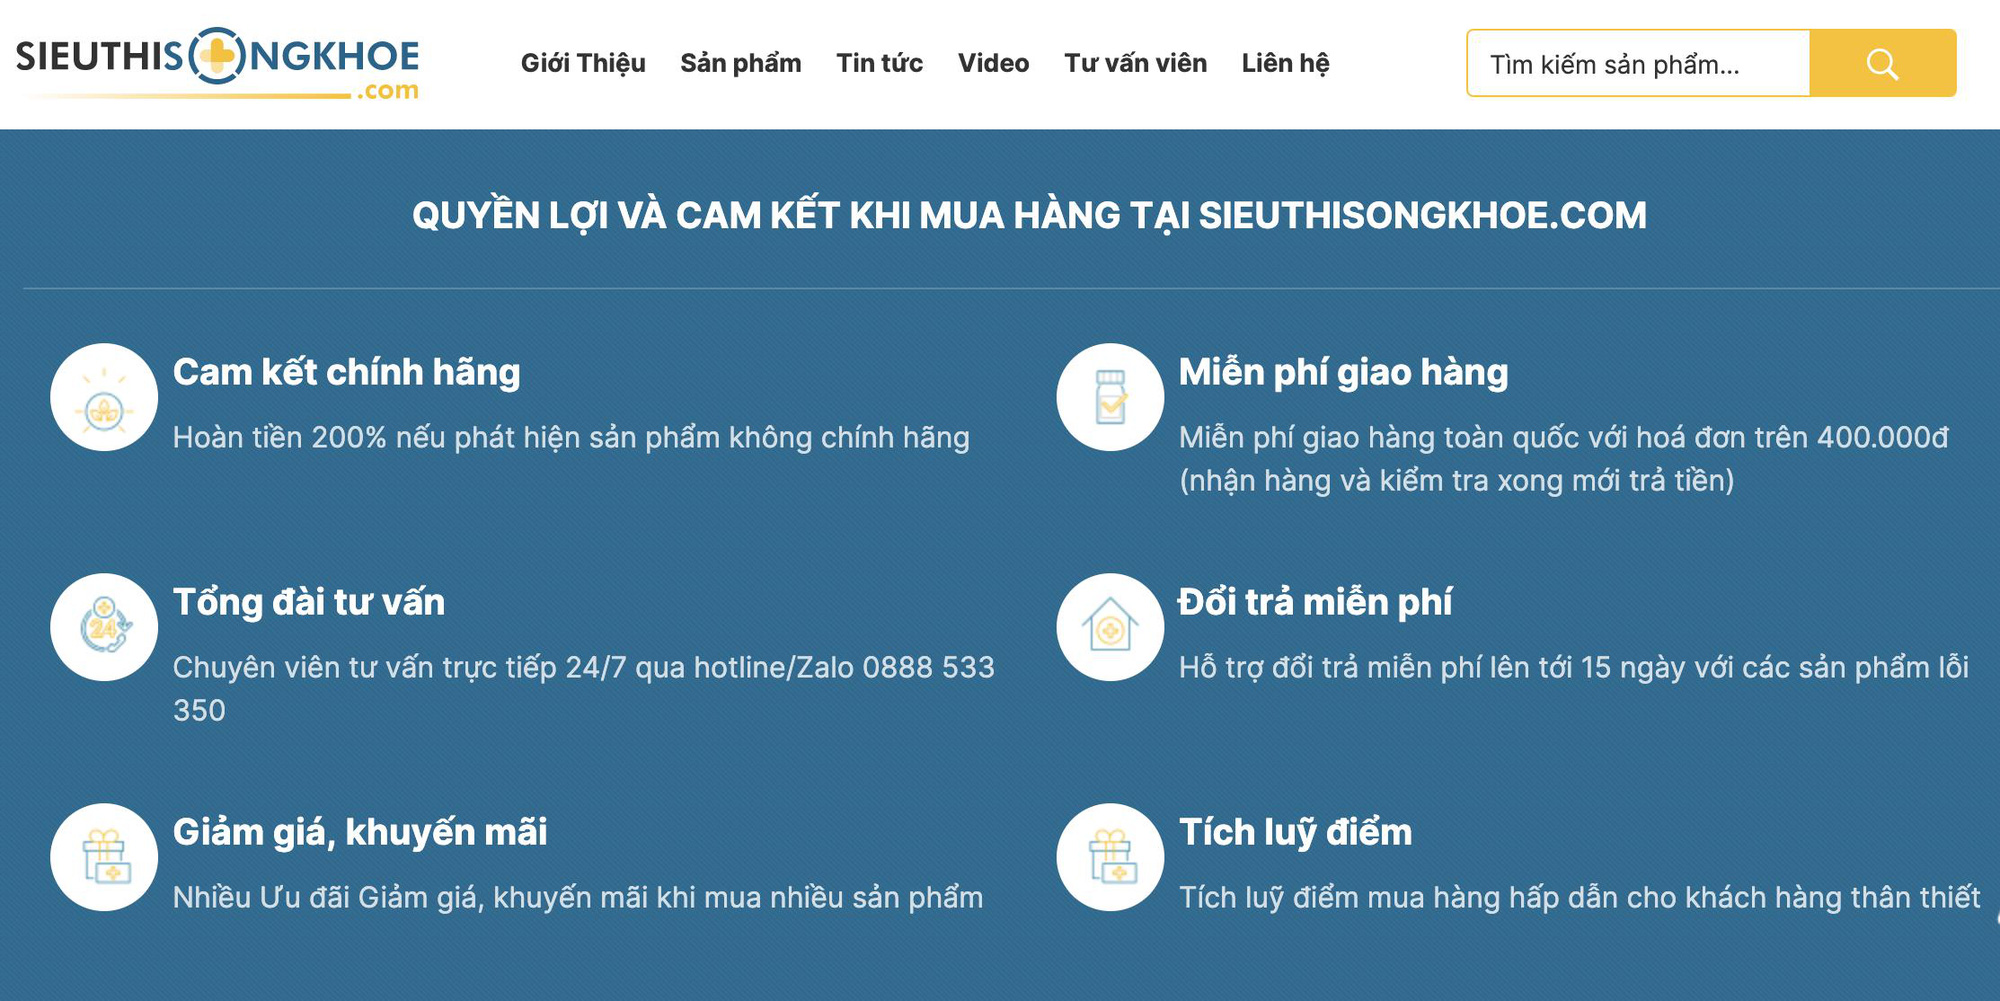 Sieuthisongkhoe.com - Địa chỉ mua thực phẩm chức năng chính hãng qua mạng uy tín - Ảnh 3.